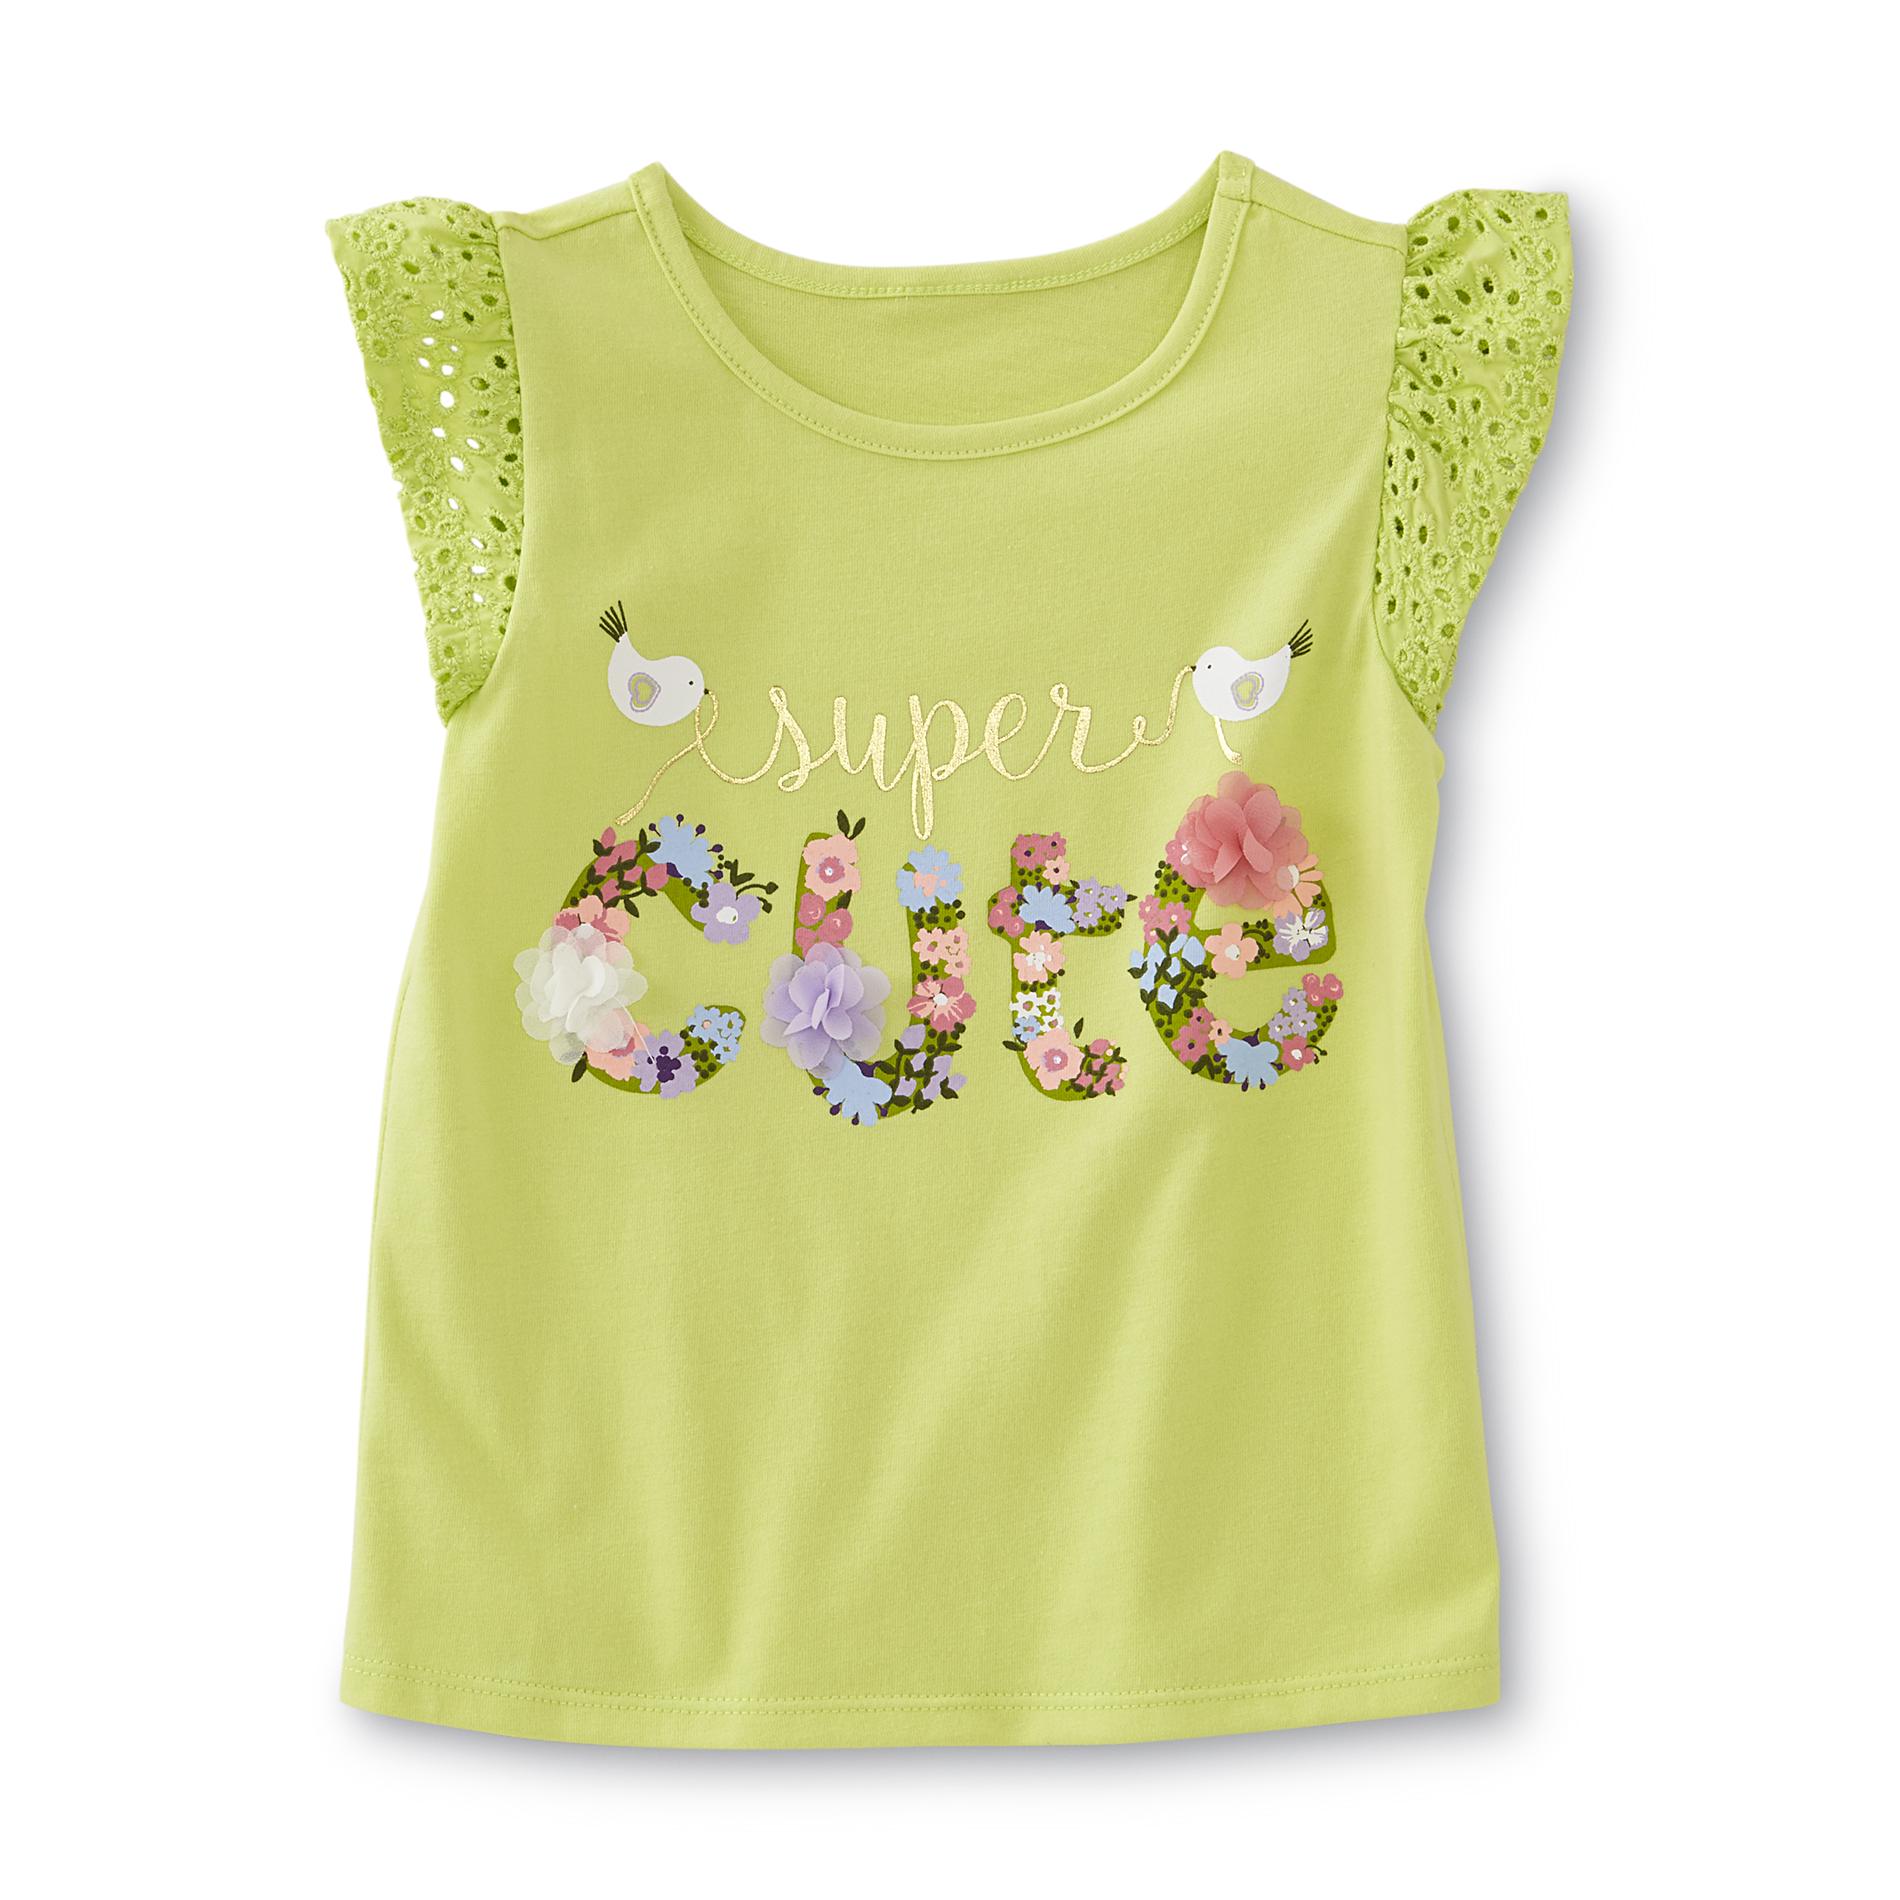 Infant & Toddler Girl's Embellished T-Shirt - Super Cute